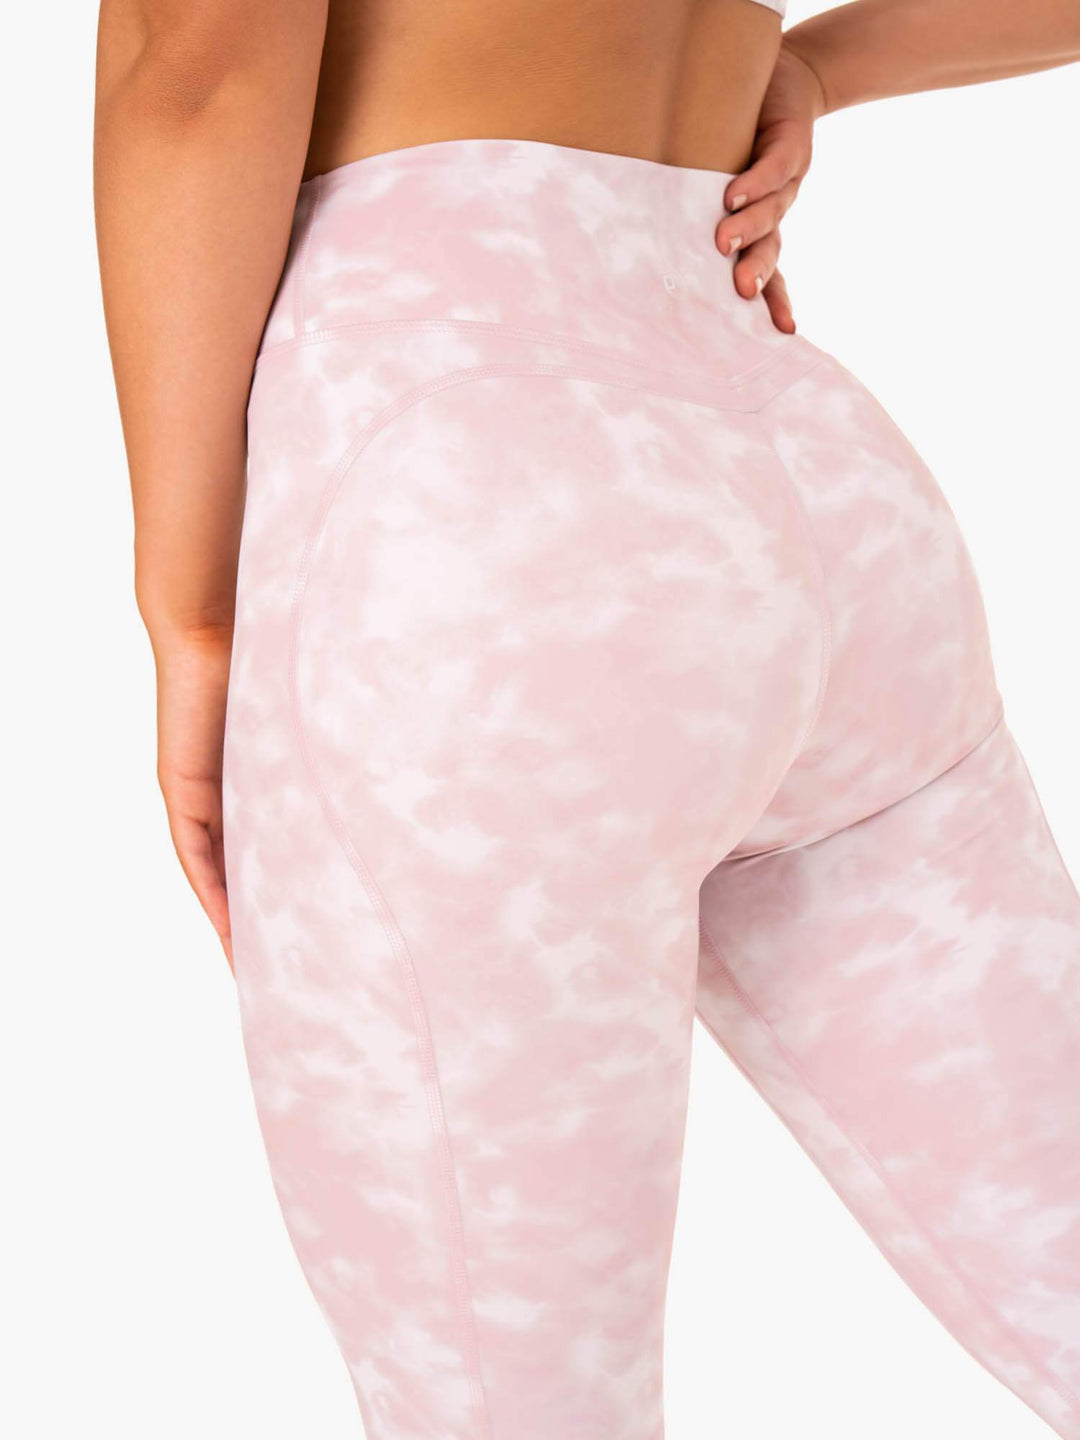 CALIA Energize Leggings paradise pink tie dye yoga pants size XS